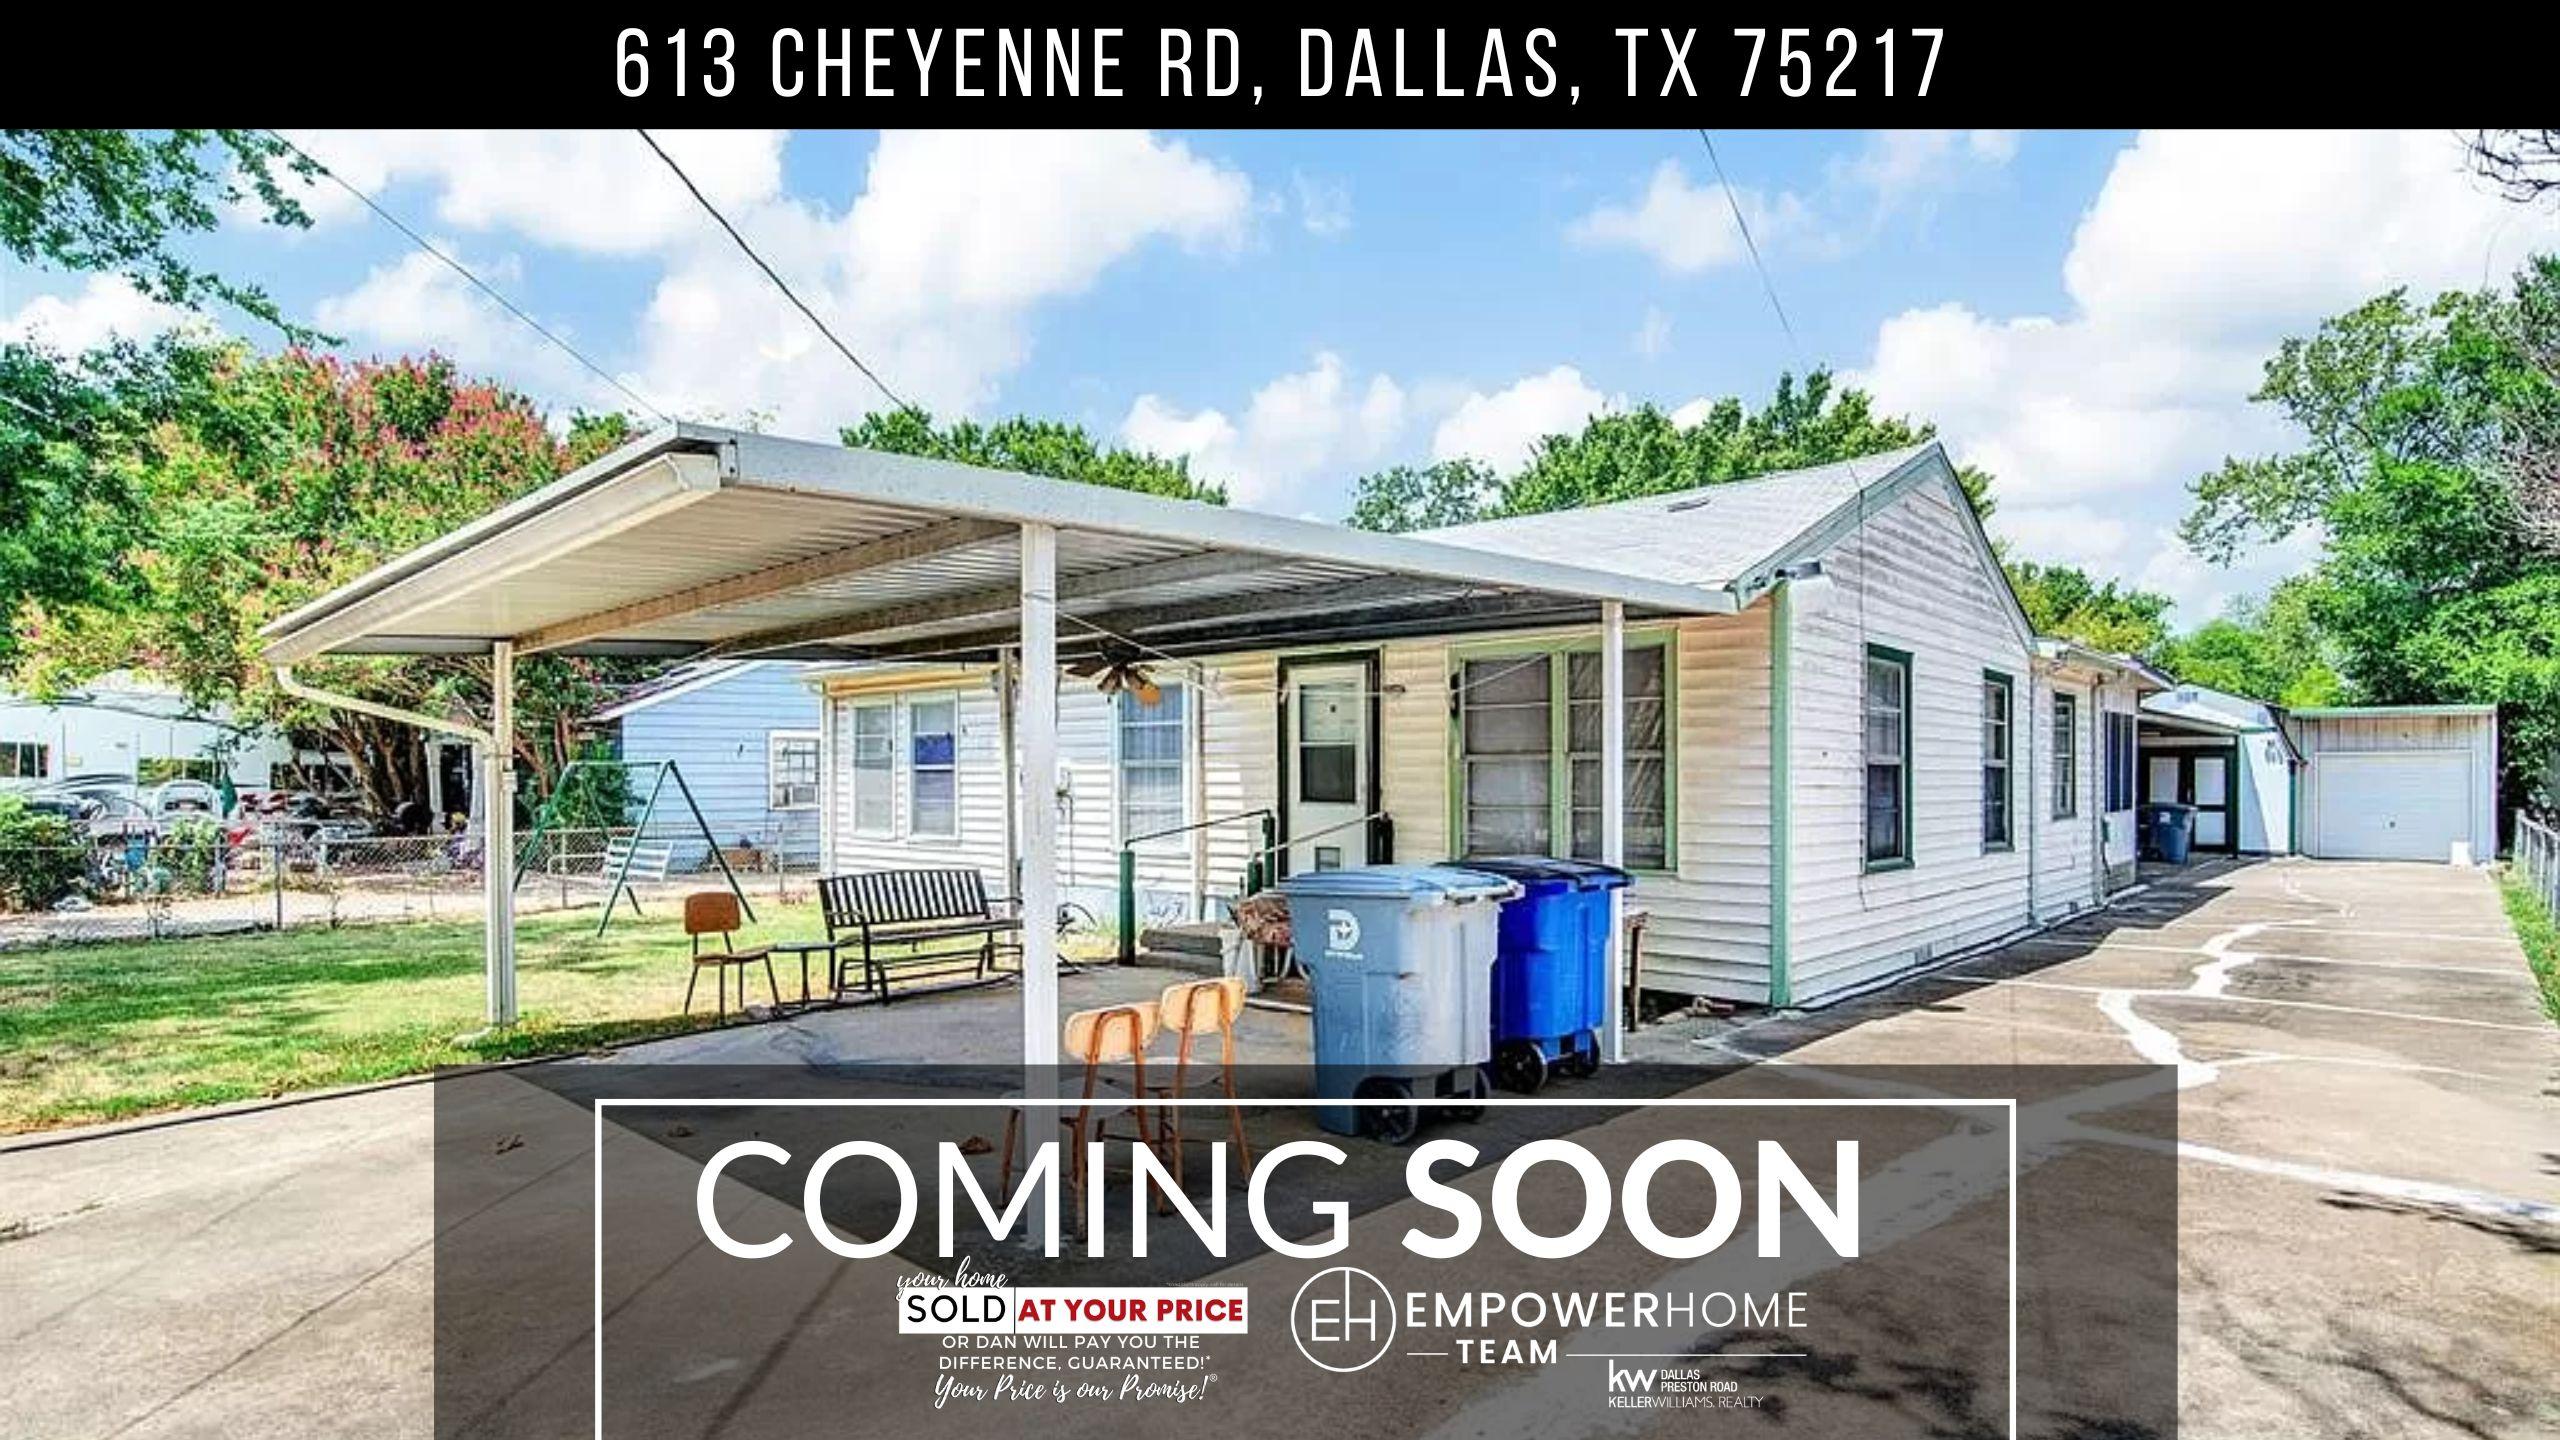 613 Cheyenne Rd, Dallas, TX 75217